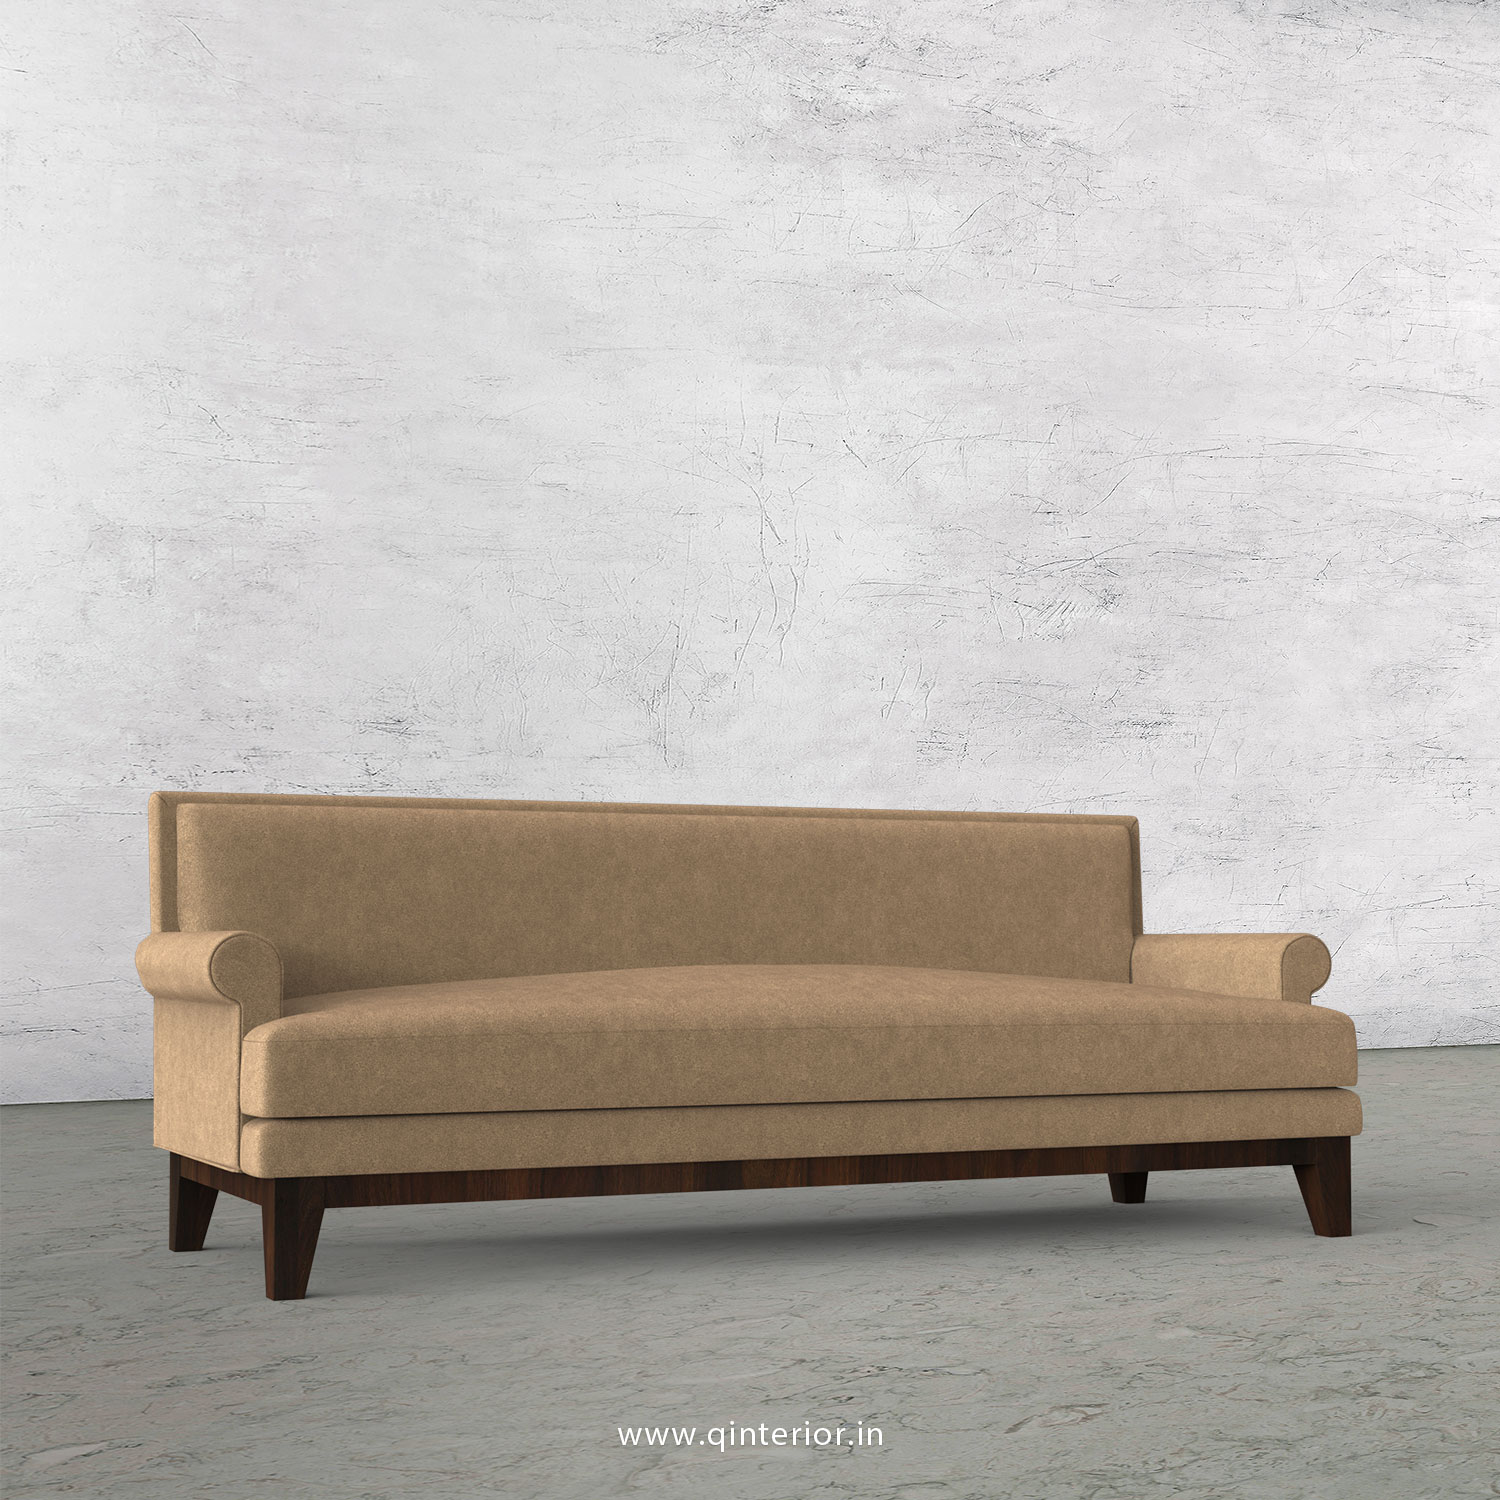 Aviana 3 Seater Sofa in Velvet Fabric - SFA001 VL03